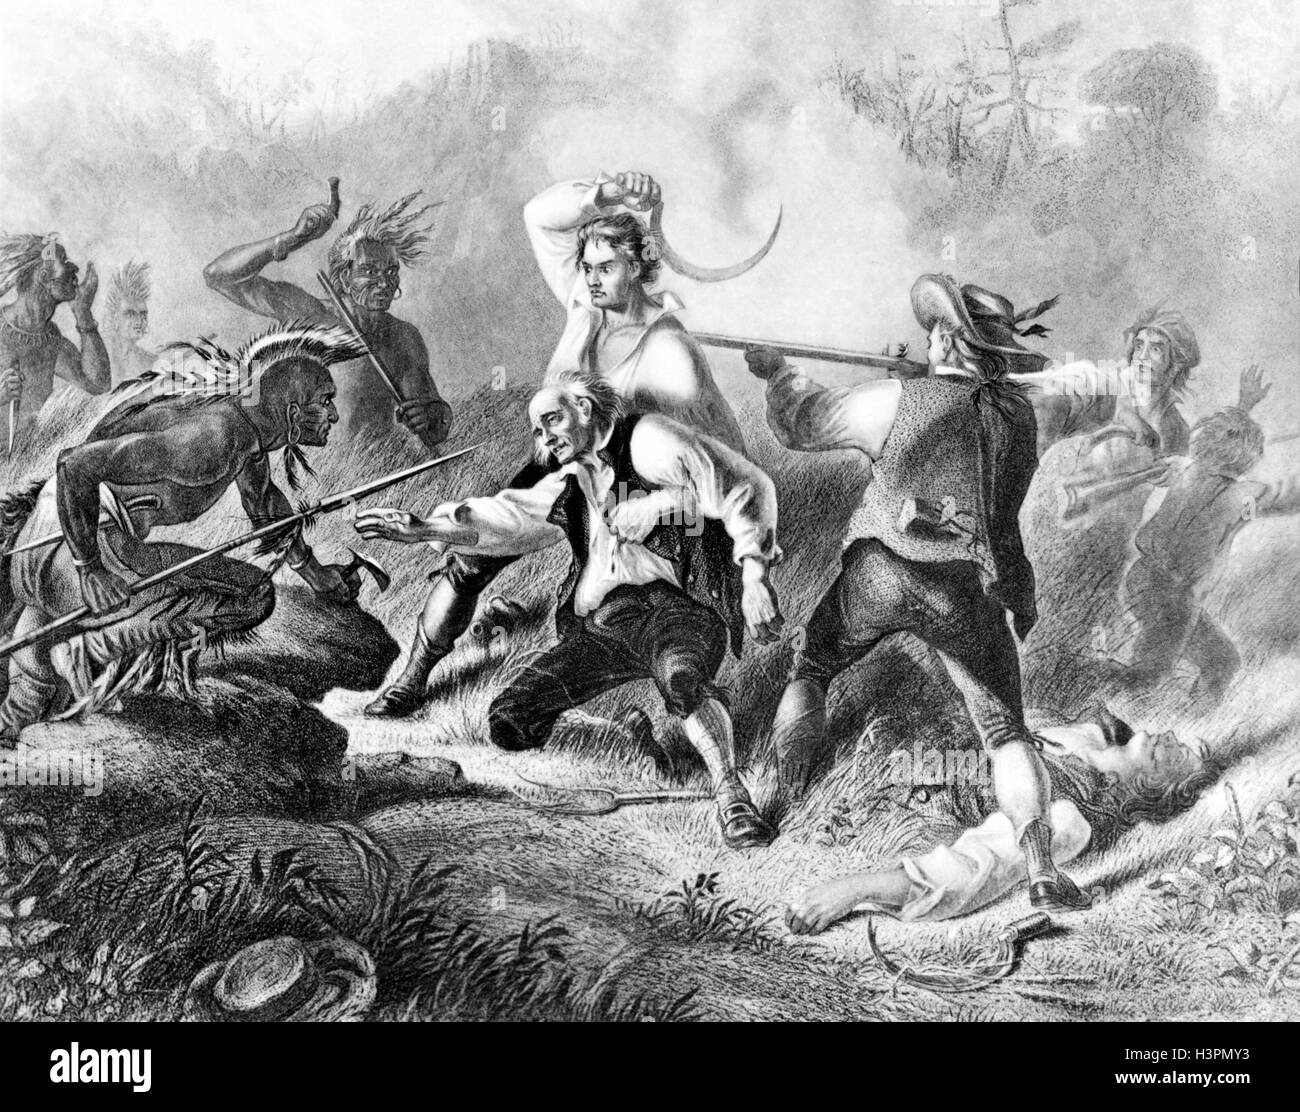 1770 Massacre d'INDIENS ILLUSTRATION WYOMING VALLEY EN PENNSYLVANIE LE 3 JUILLET 1778 IROQUOIS et les colons de la guerre révolutionnaire Banque D'Images